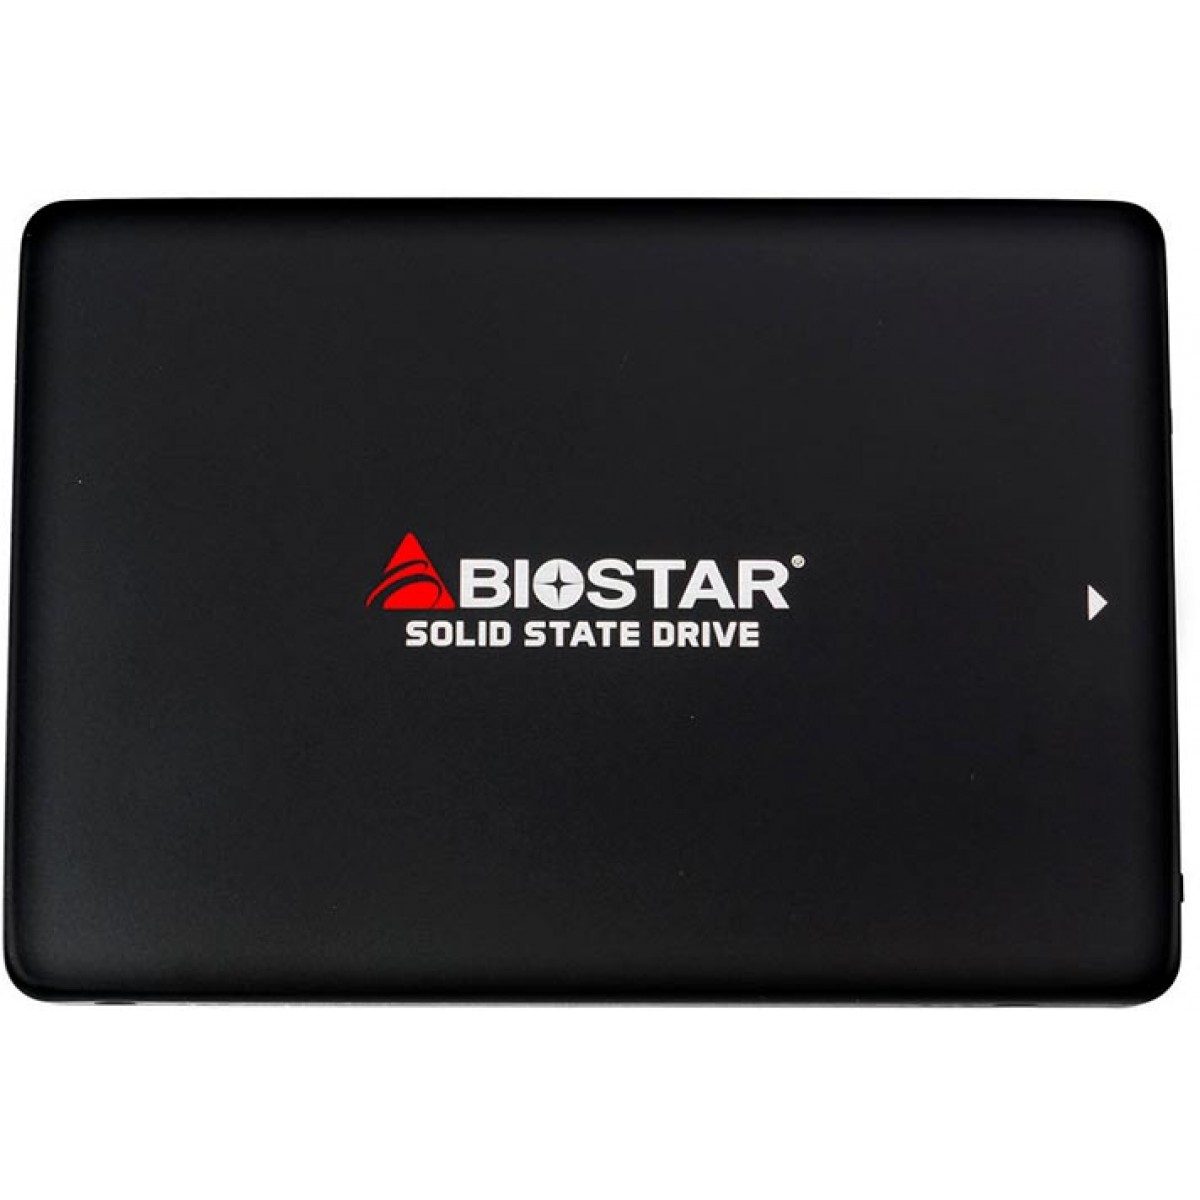 SSD Biostar S120 128GB, Sata III, Leitura 550MBs Gravação 500MBs, SA902S2E38